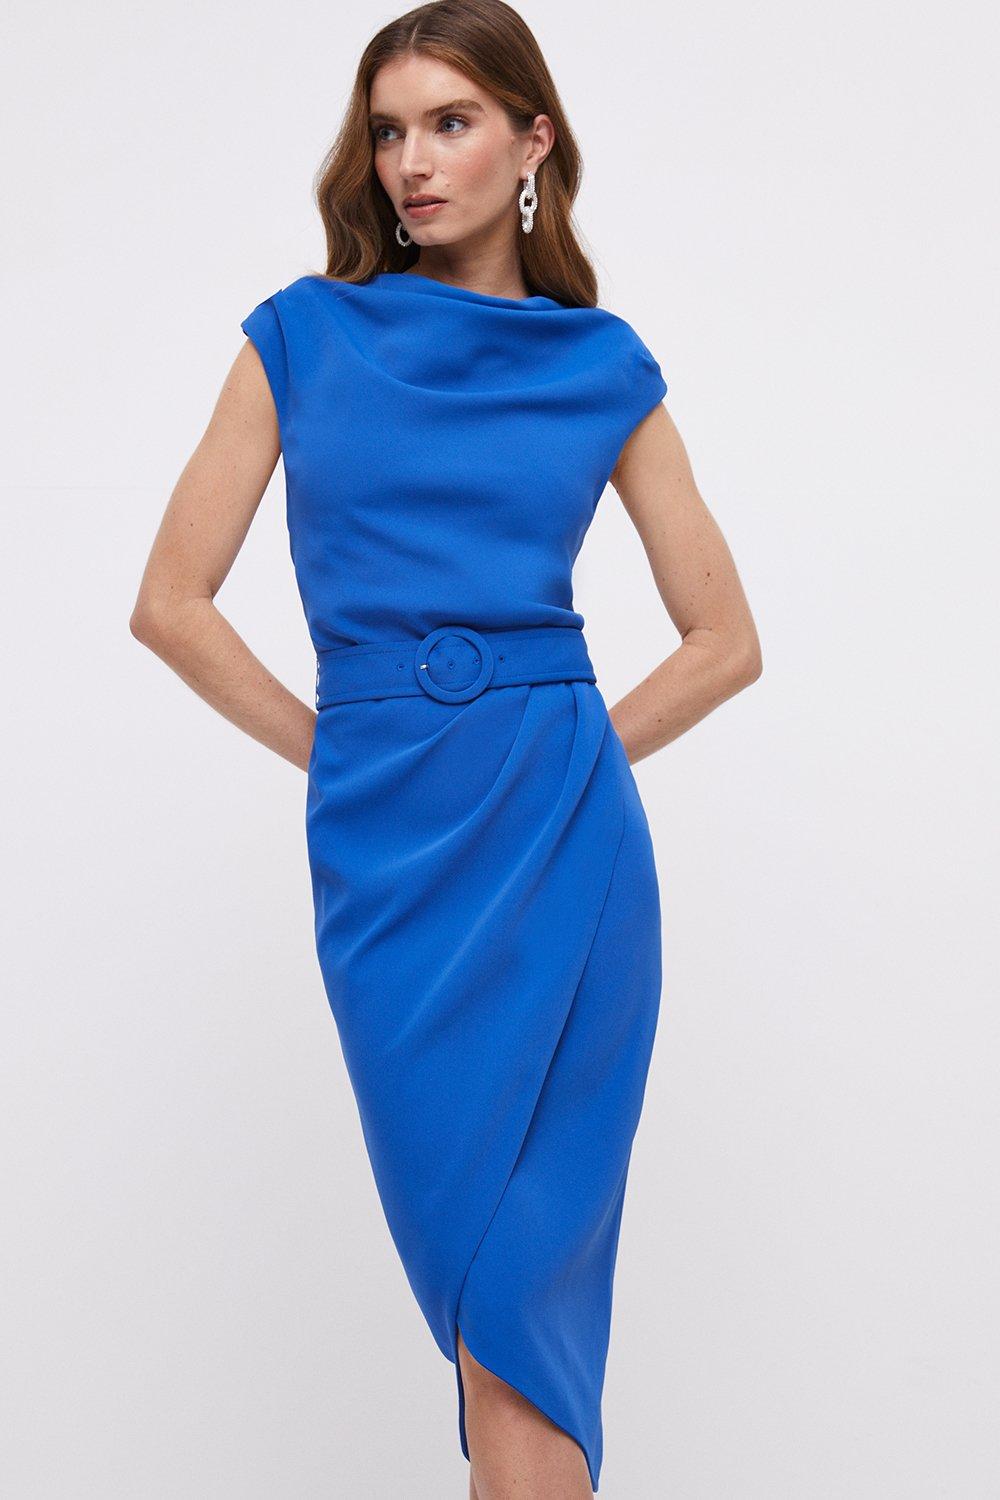 Belted High Neck Wrap Skirt Dress - Blue